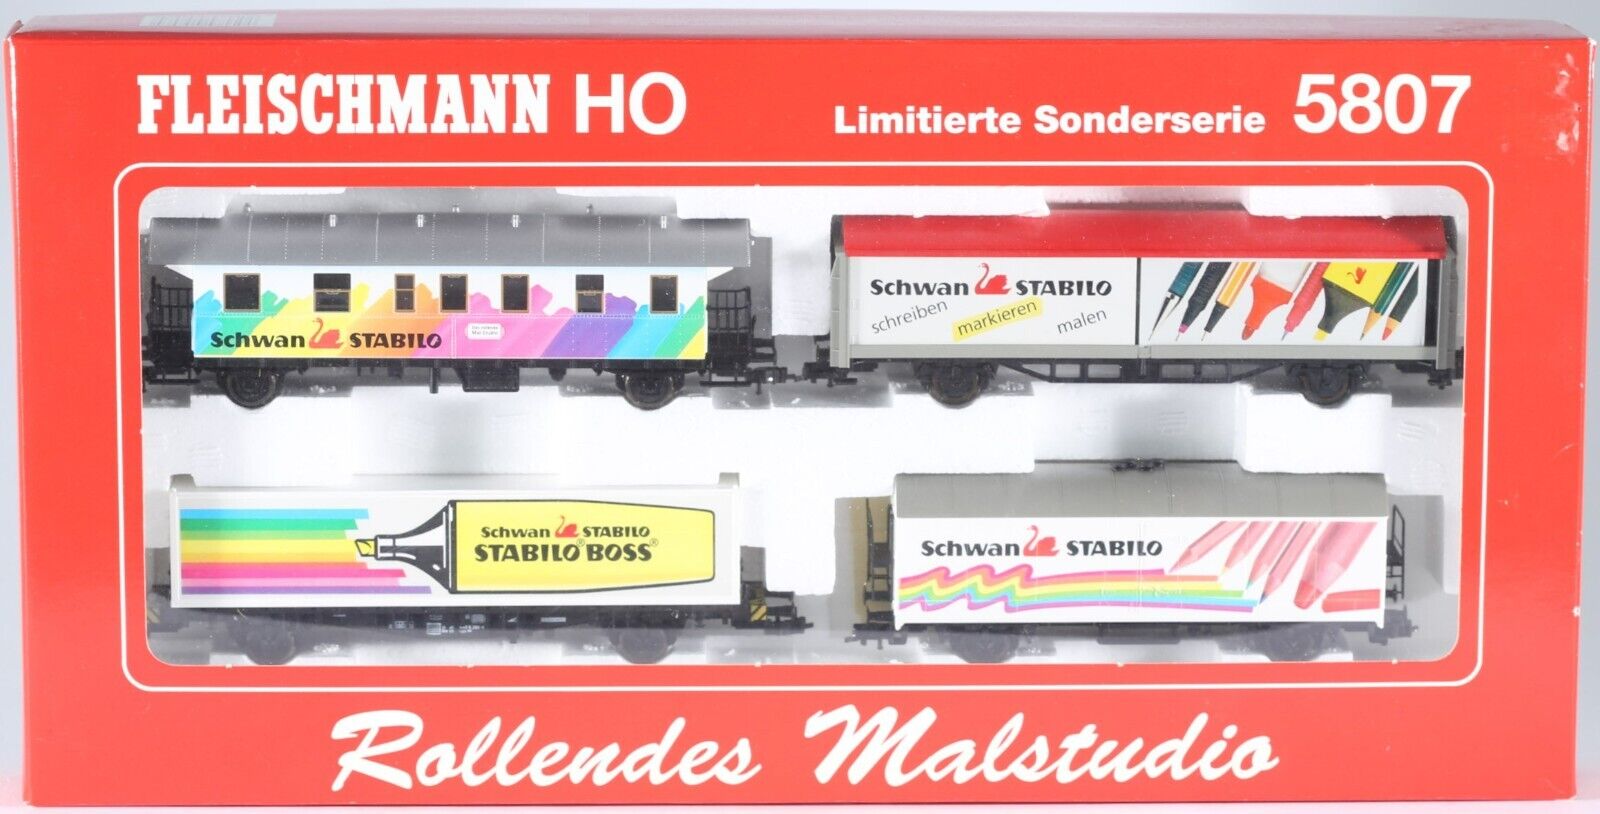 Limited Edition FLEISCHMANN H0 freight cars Rollendes Malstudio #5807